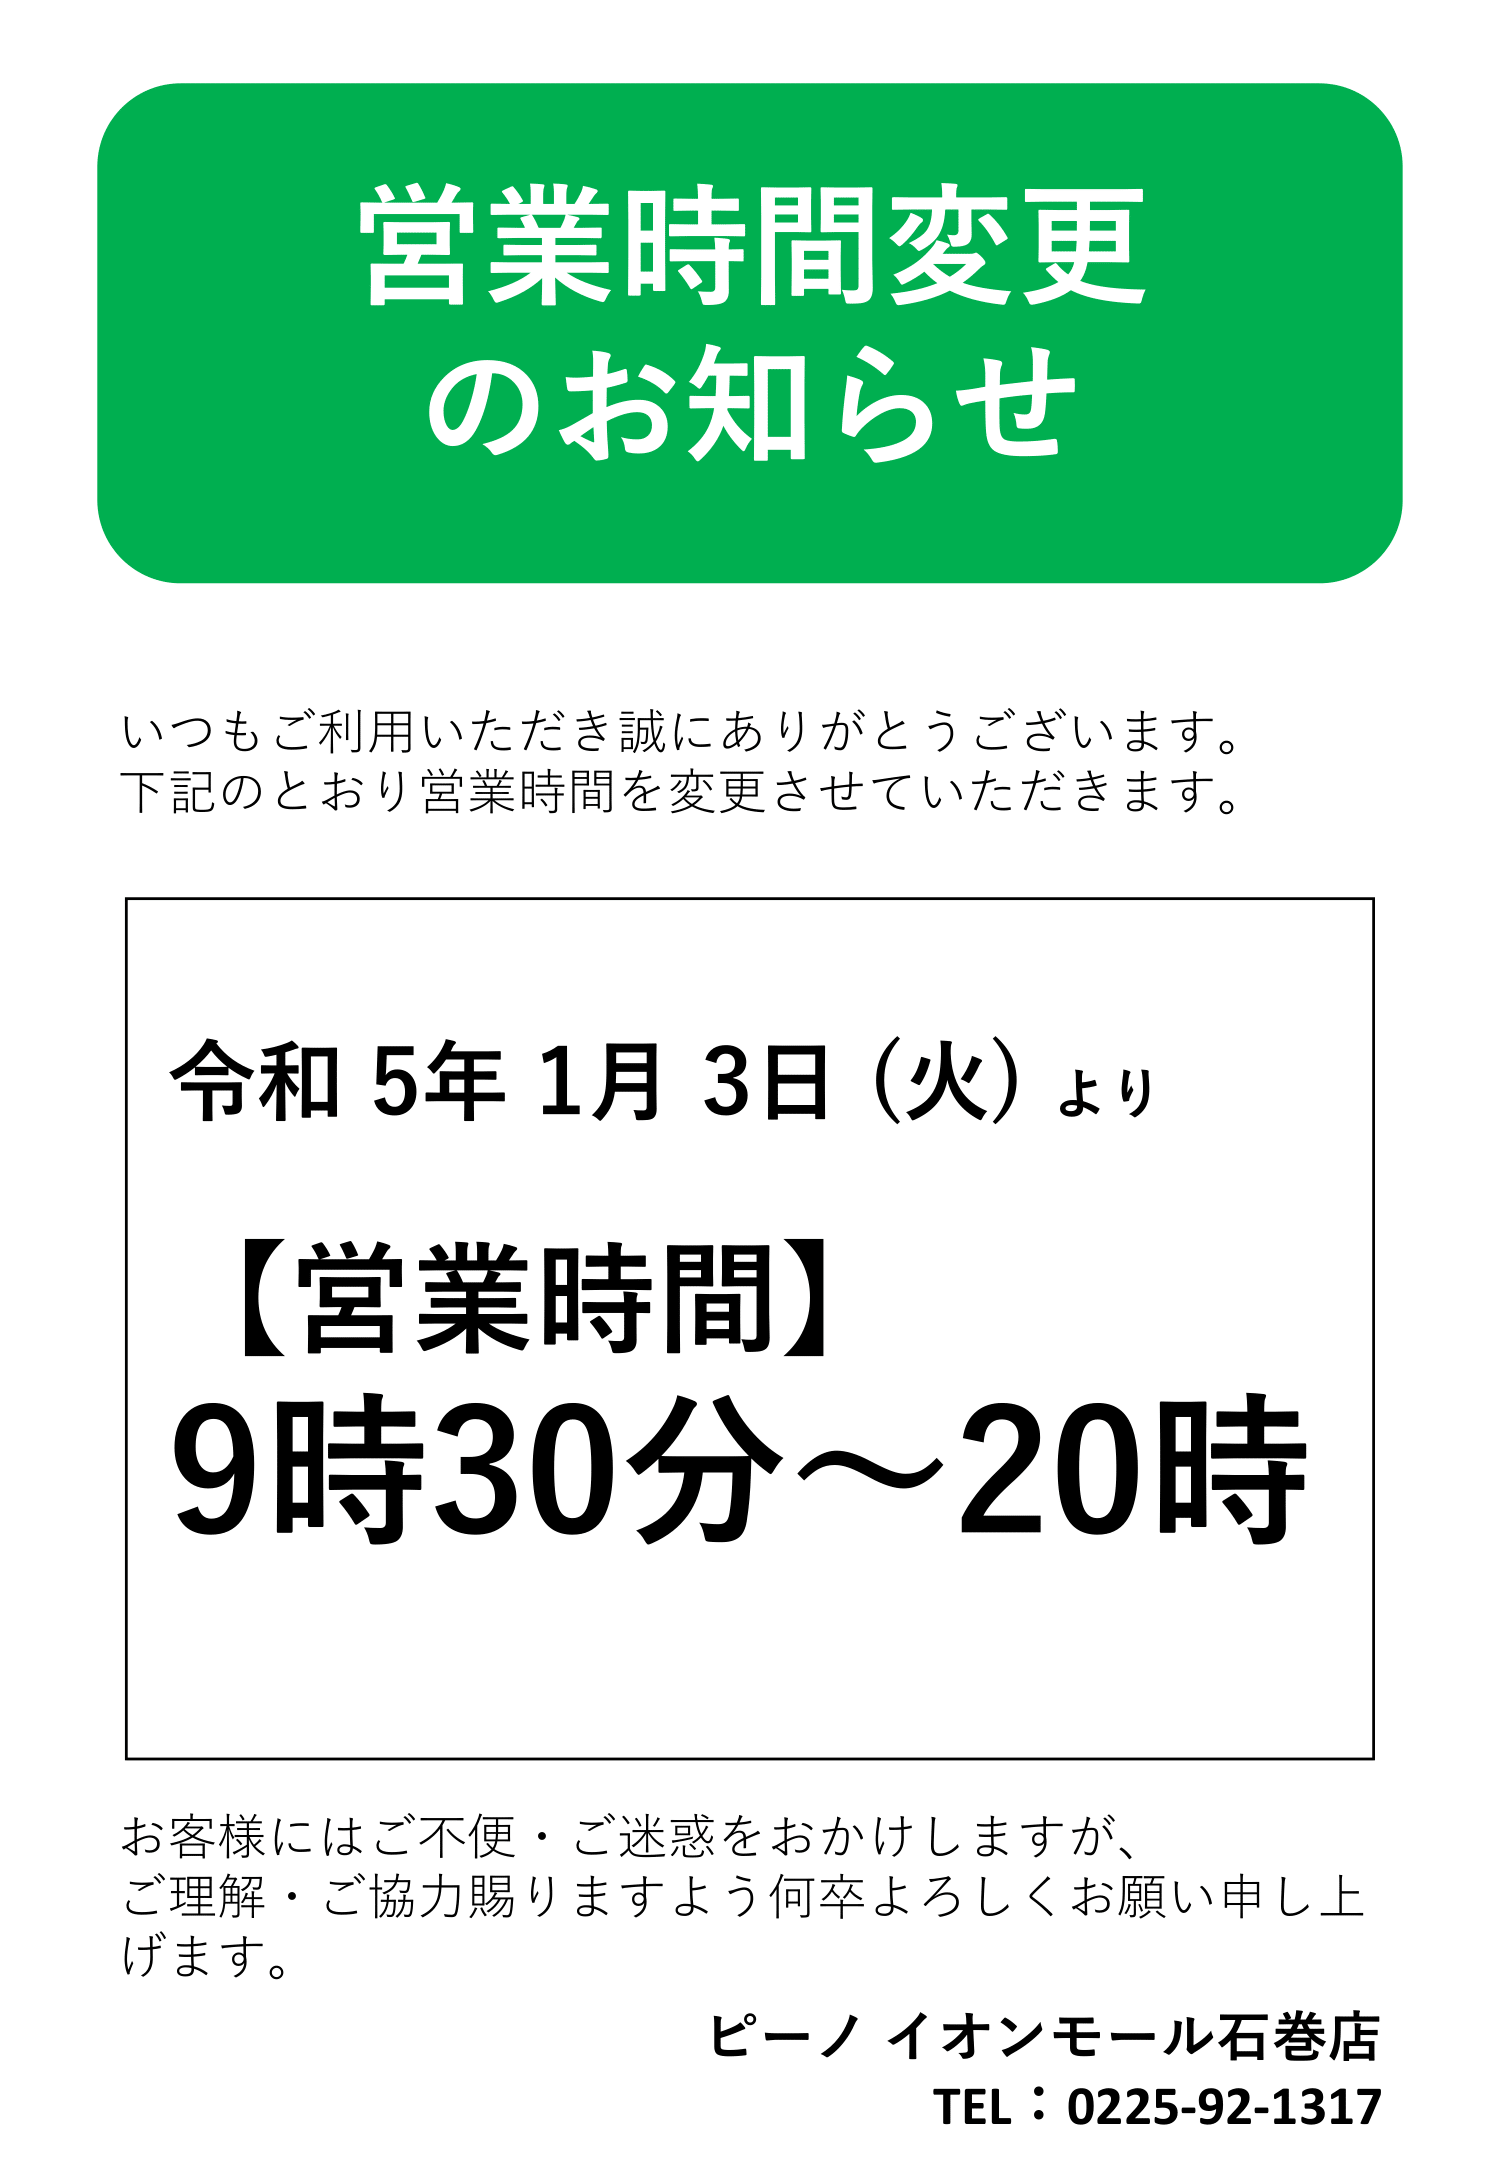 「ピーノ イオンモール石巻店」営業時間変更のおしらせ